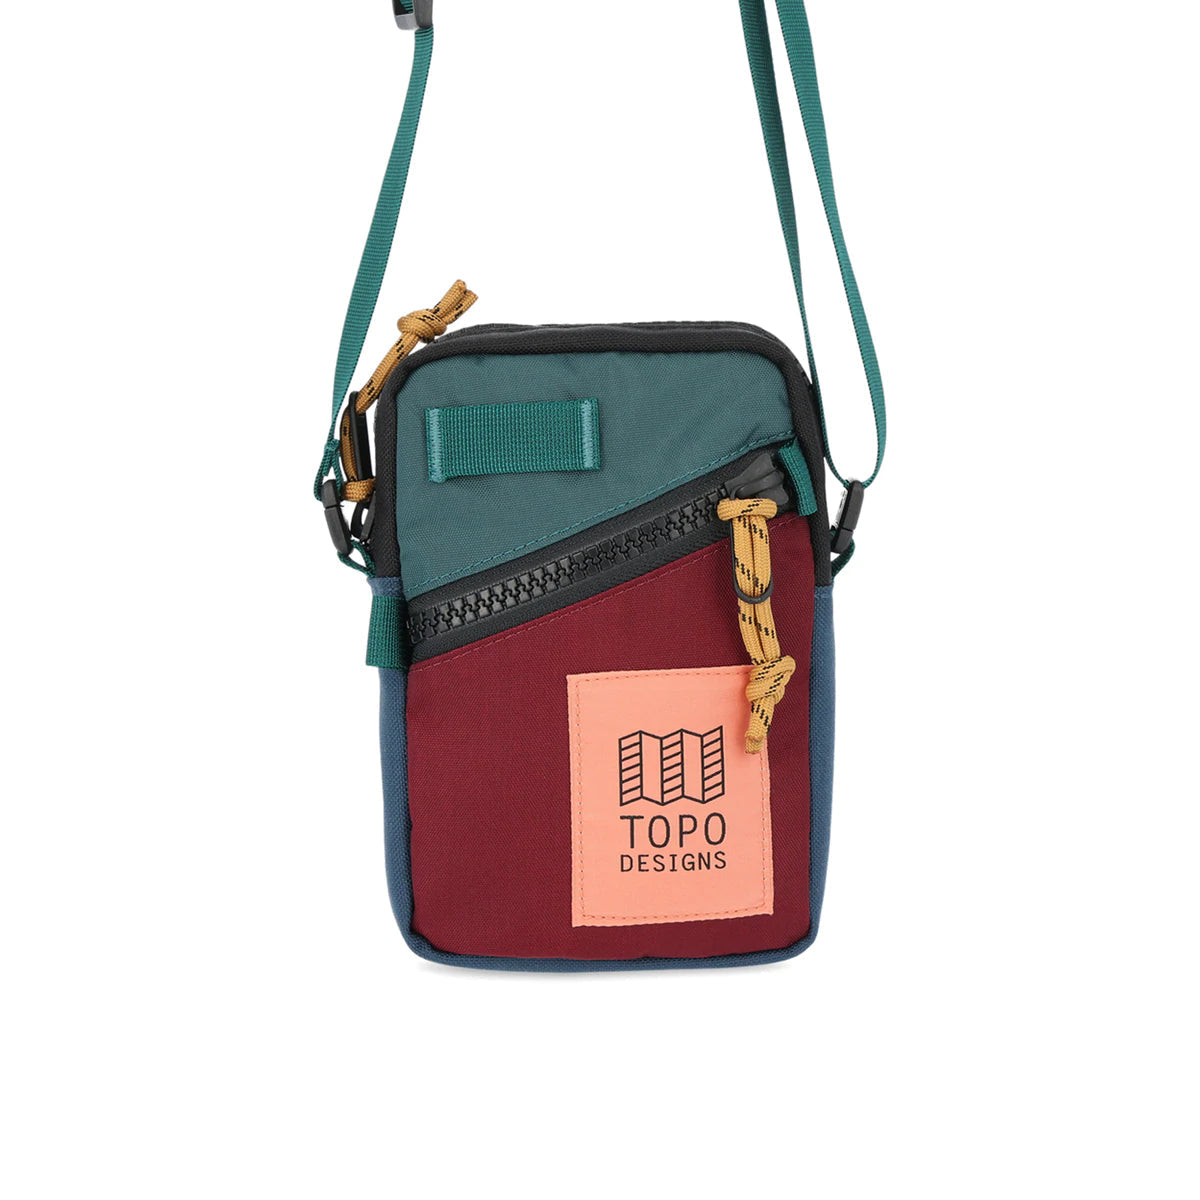 Topo Designs : Mini Shoulder Bag : Zinfandel/Botanic Green